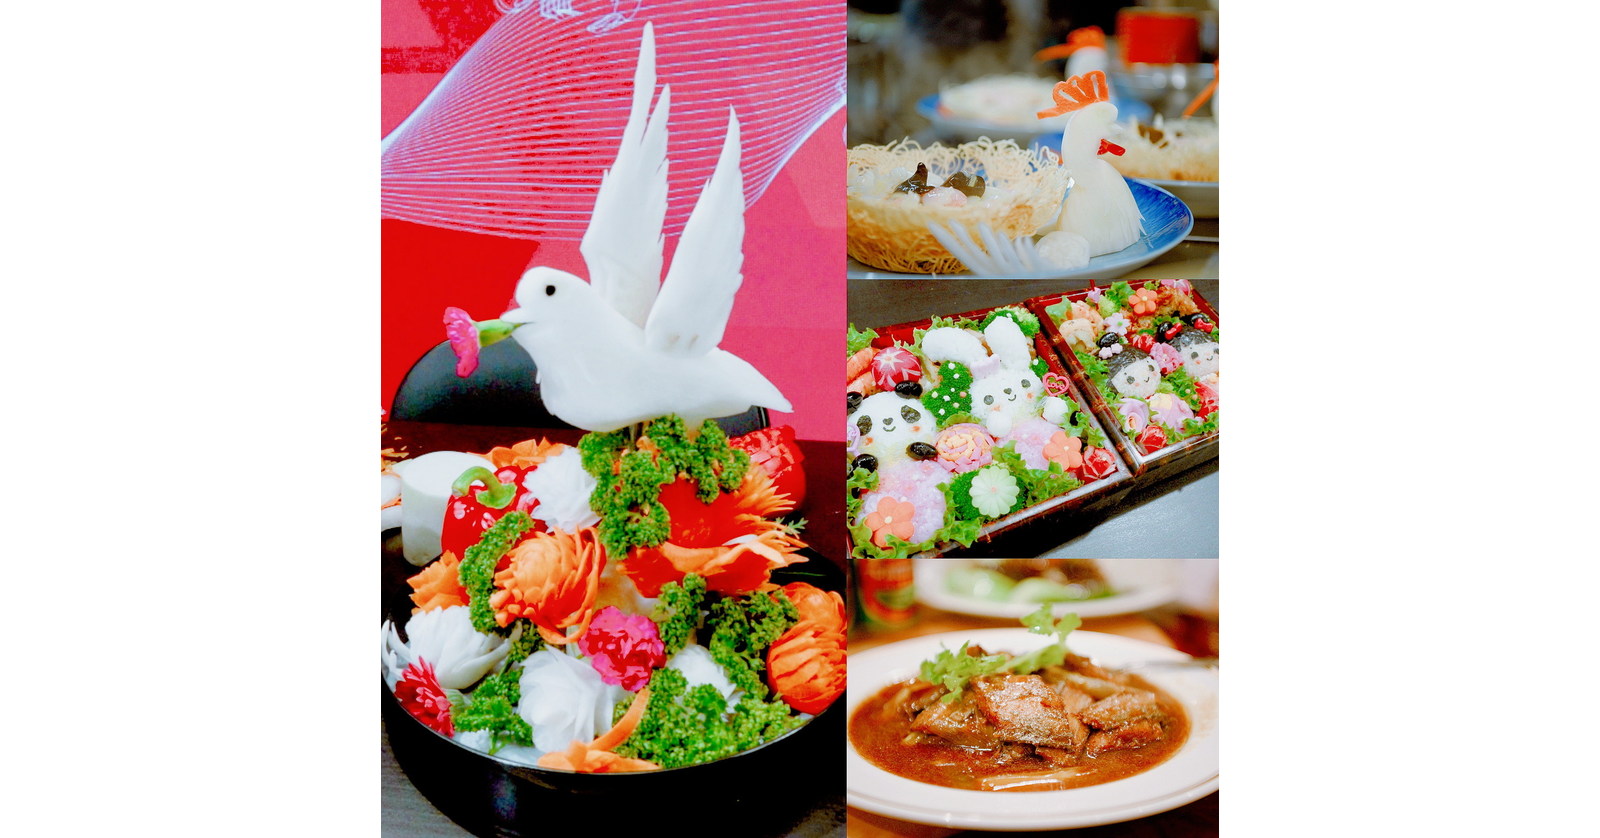 海外通信シリーズ「Precious Liaoning Taste in Japan」が日本の東京で盛況のうちに開催されました。